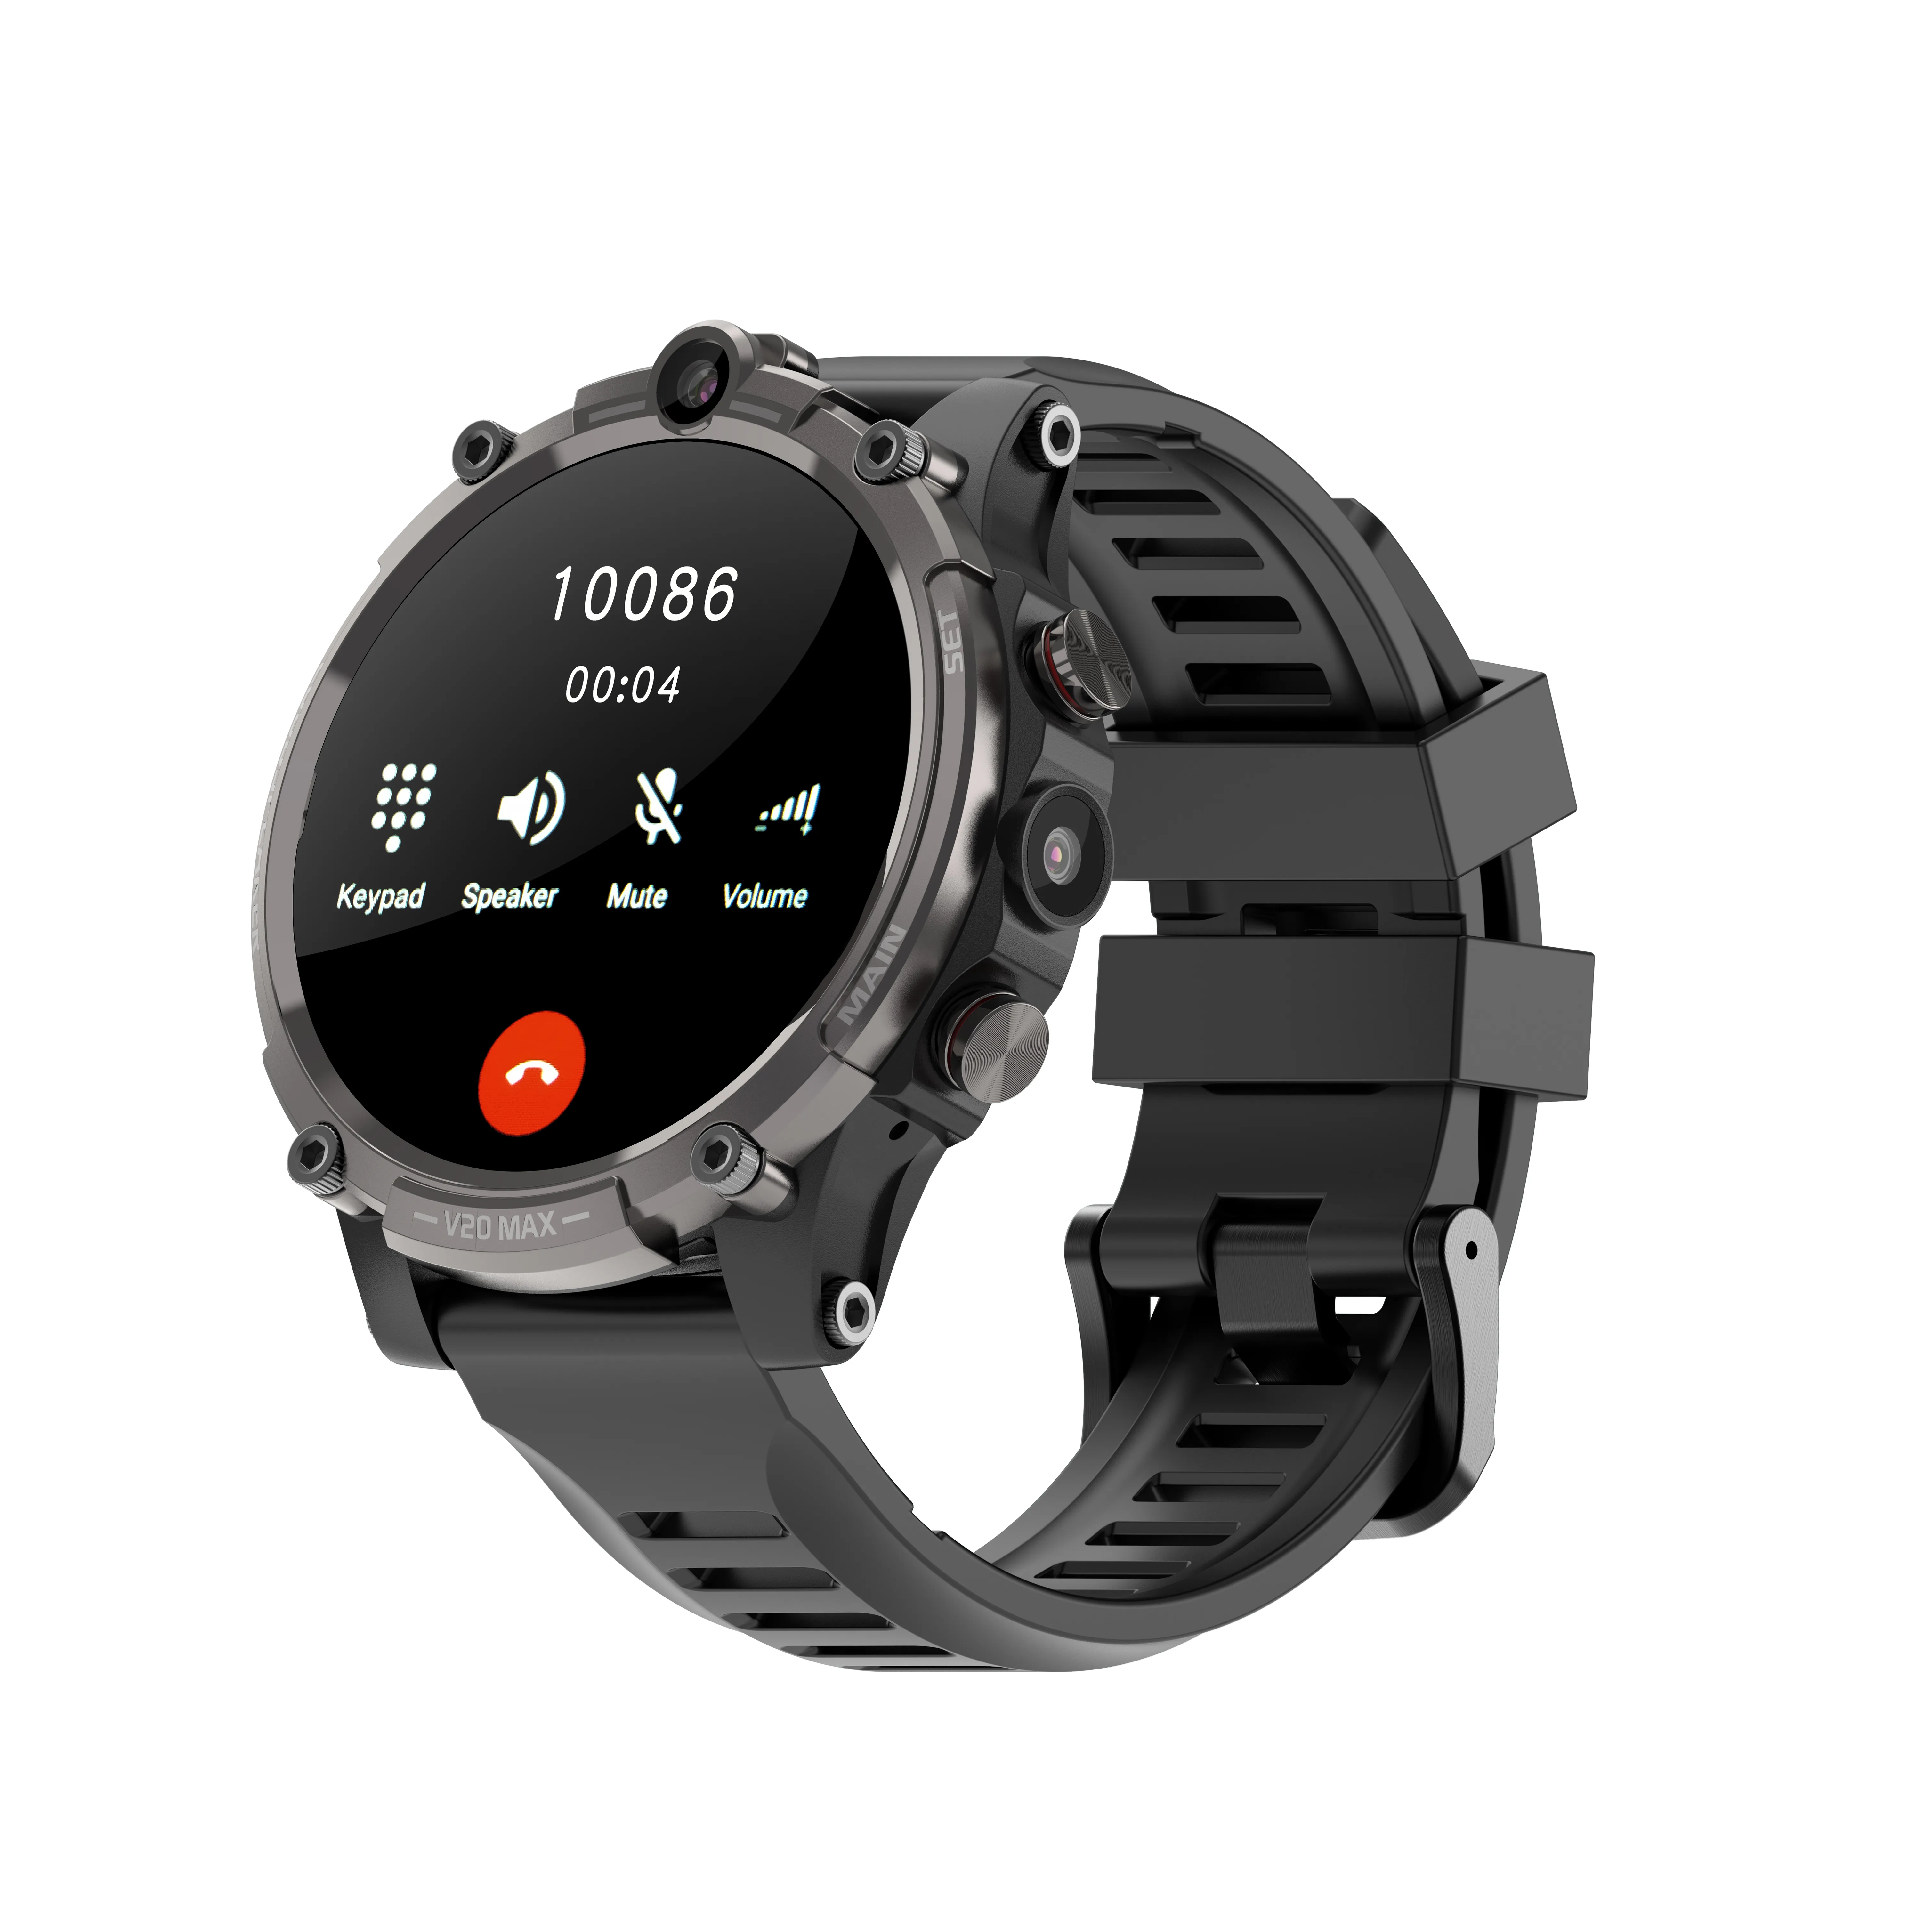 4G LTE Cep Telefonları Sim Kart Akıllı Saat Fitness Tracker IP68 Su geçirmez kalp atış hızı kan basıncı GPS Akıllı saat iOS Android Telefon Saatleri 128GB 2MP Kameralar